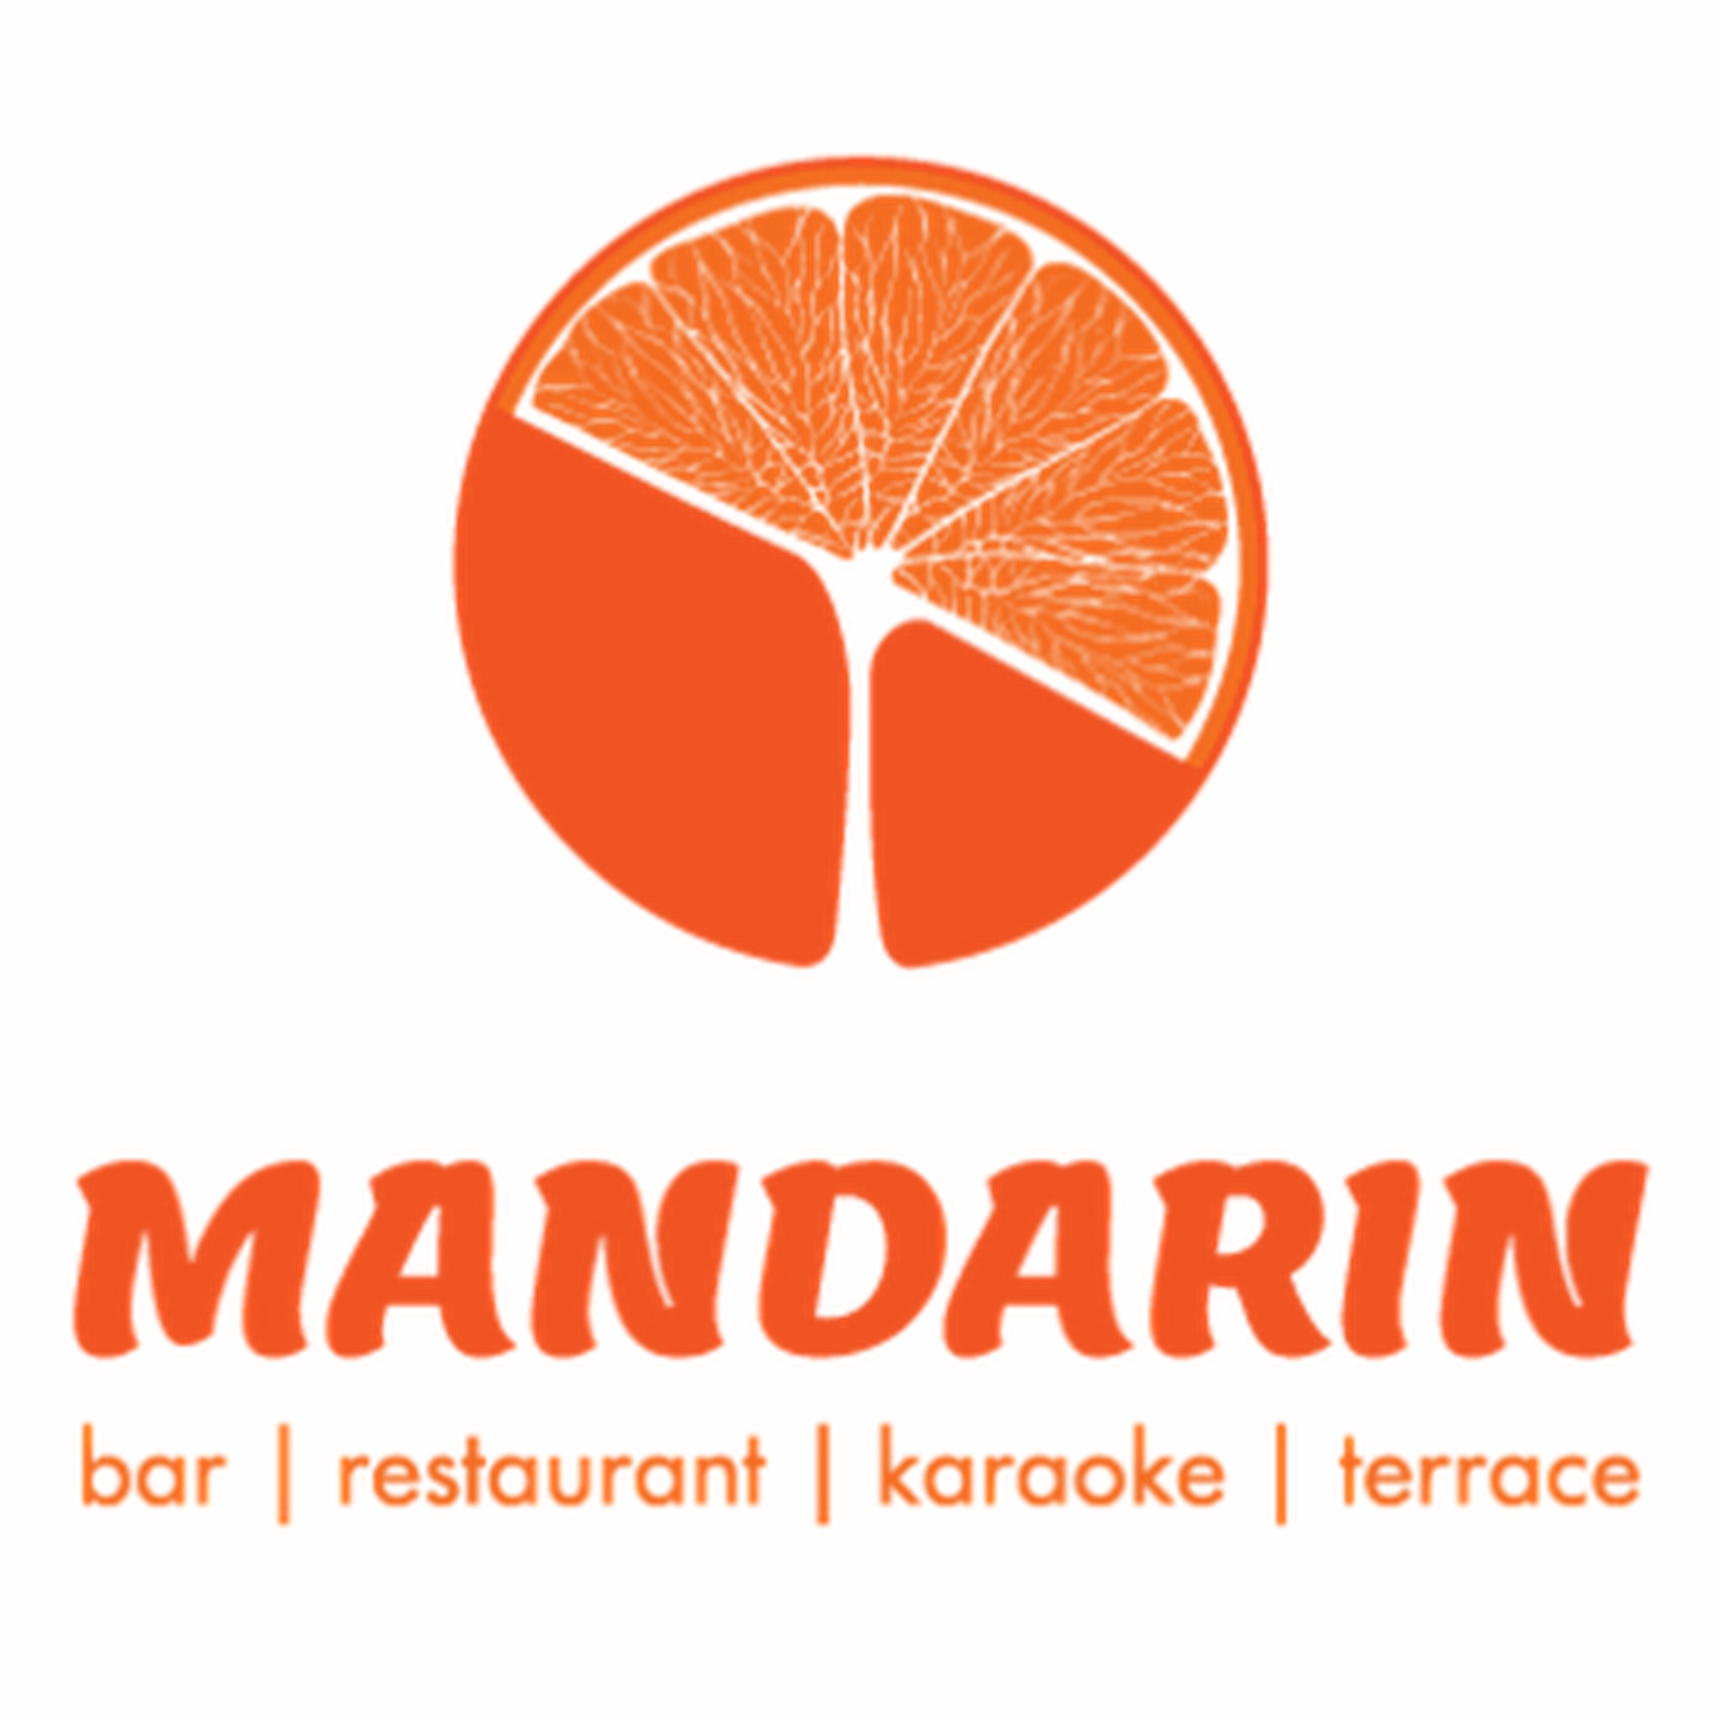 Мандарин томск. Мандарин. Мандарин логотип. Мандарин ресторан логотип. ТРЦ мандарин в Сочи логотип.